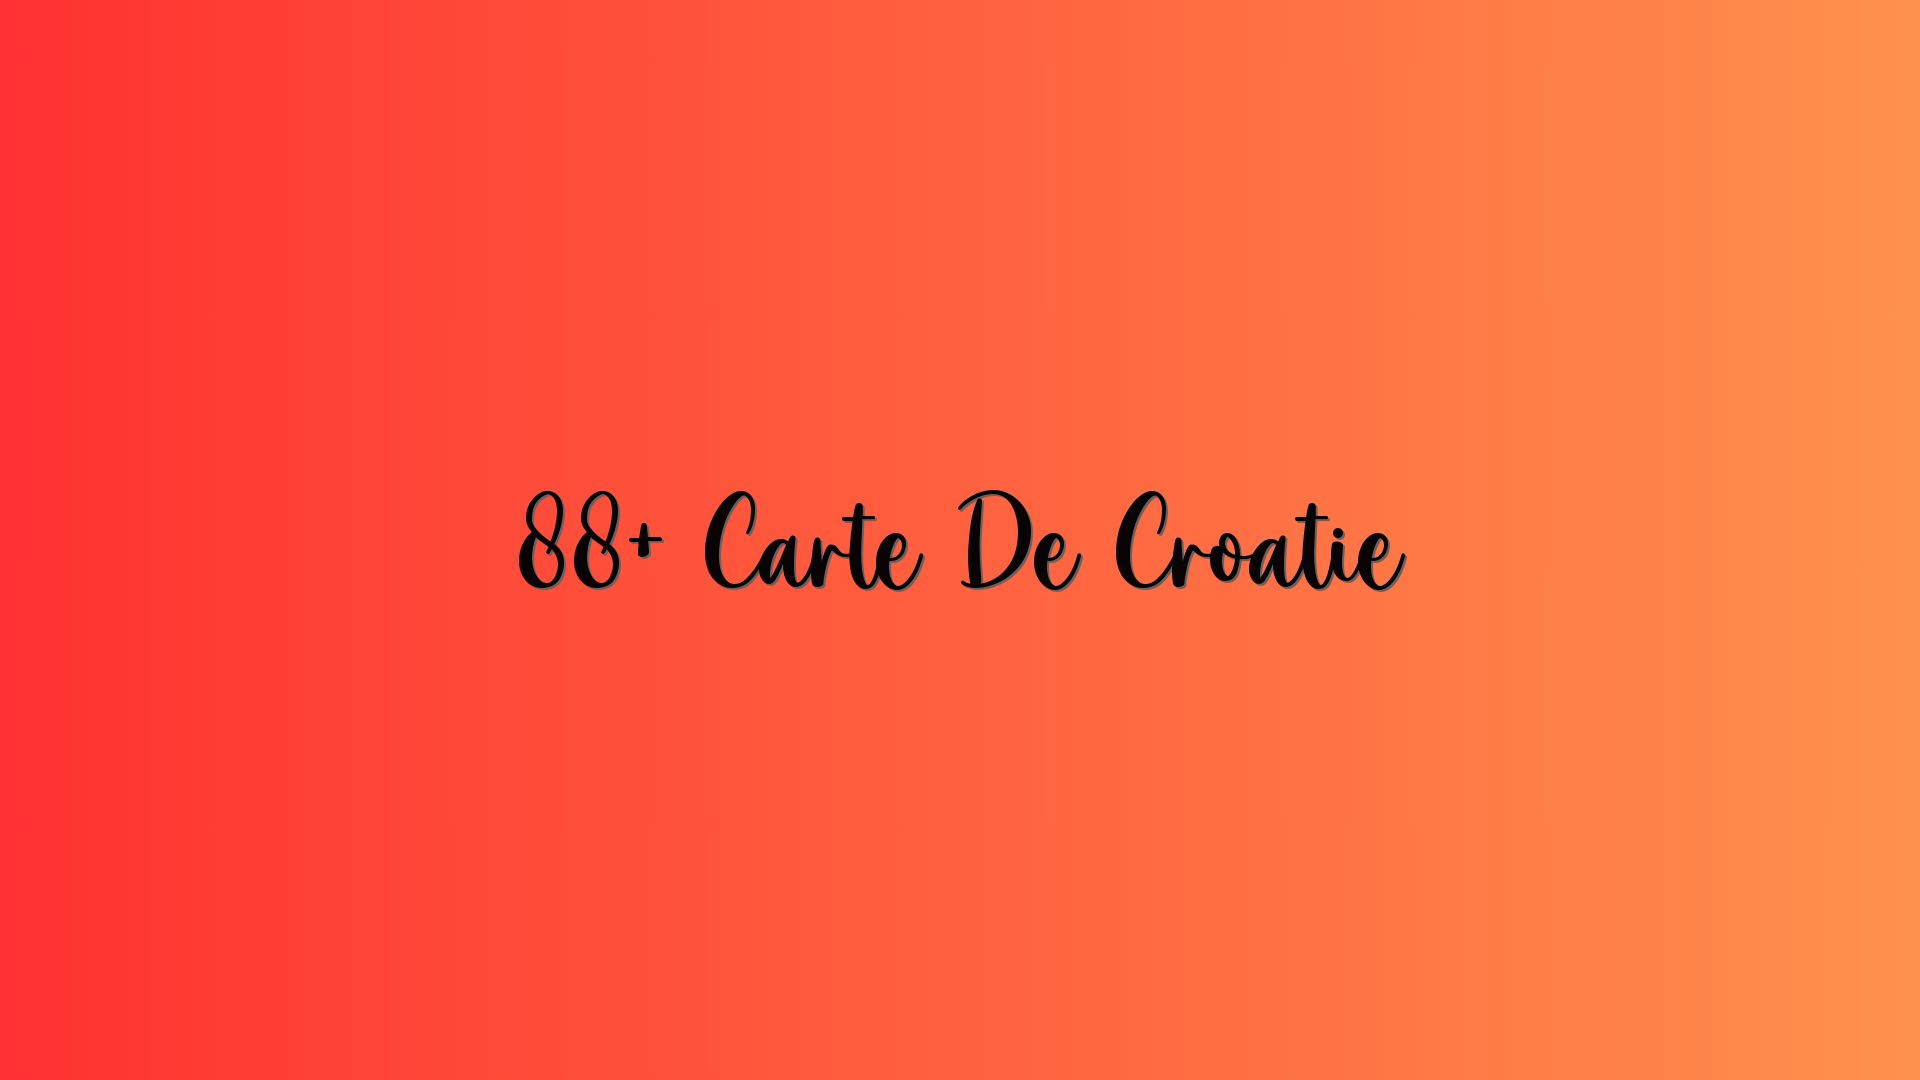 88+ Carte De Croatie